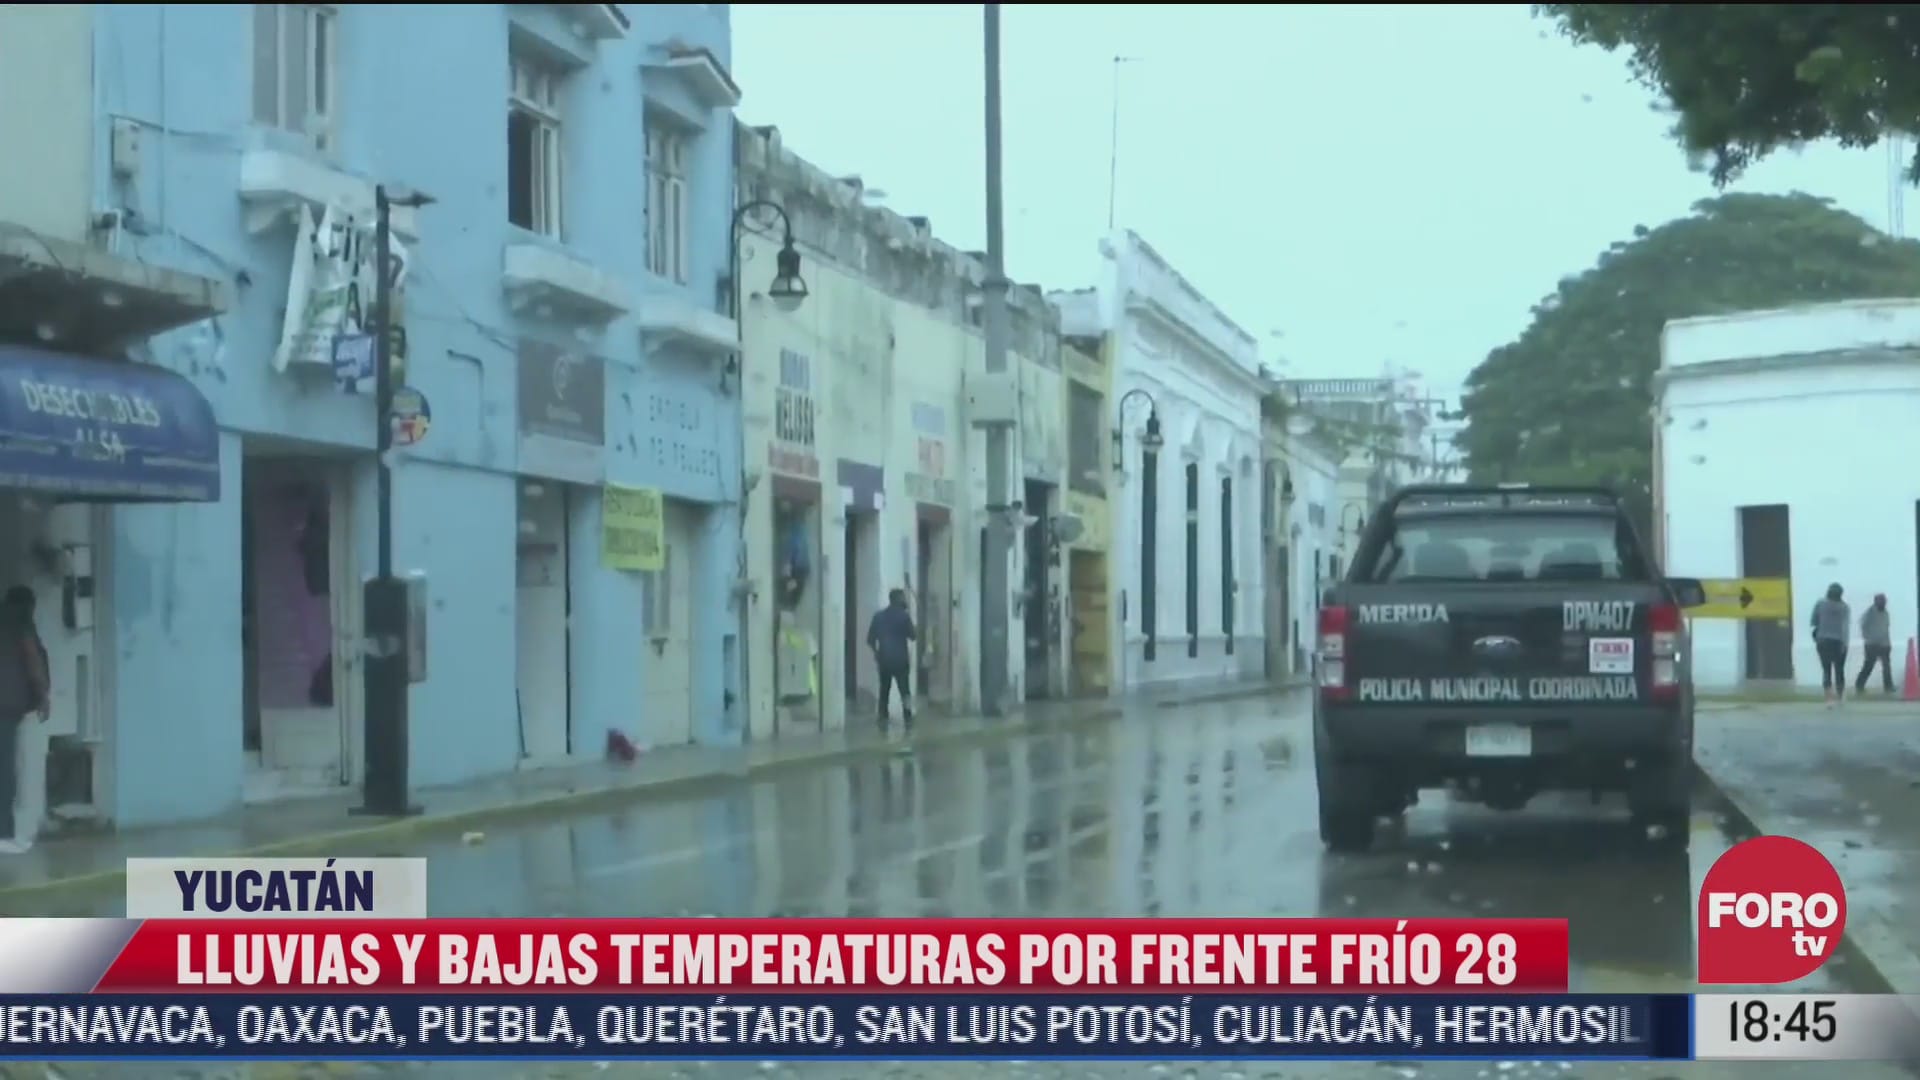 lluvias y bajas temperaturas por frente frio 28 en yucatan